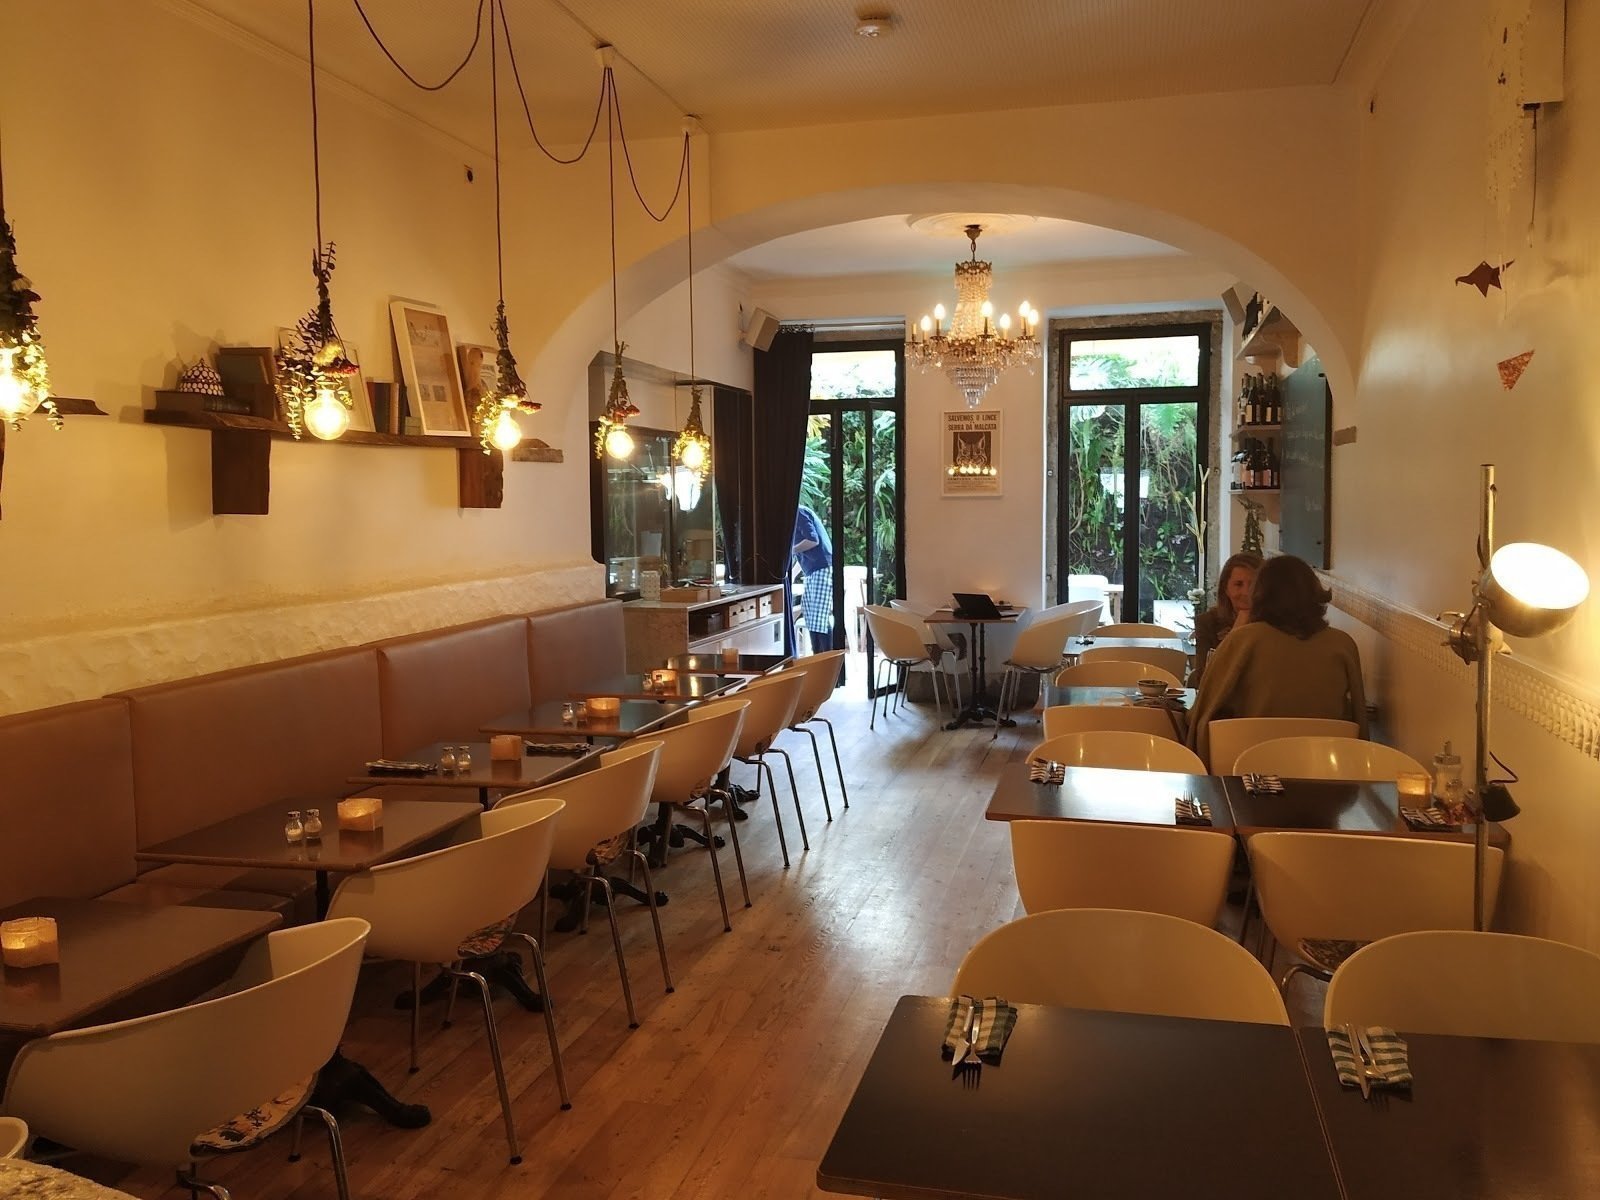 Café Royale: A Work-Friendly Place in Lisbon